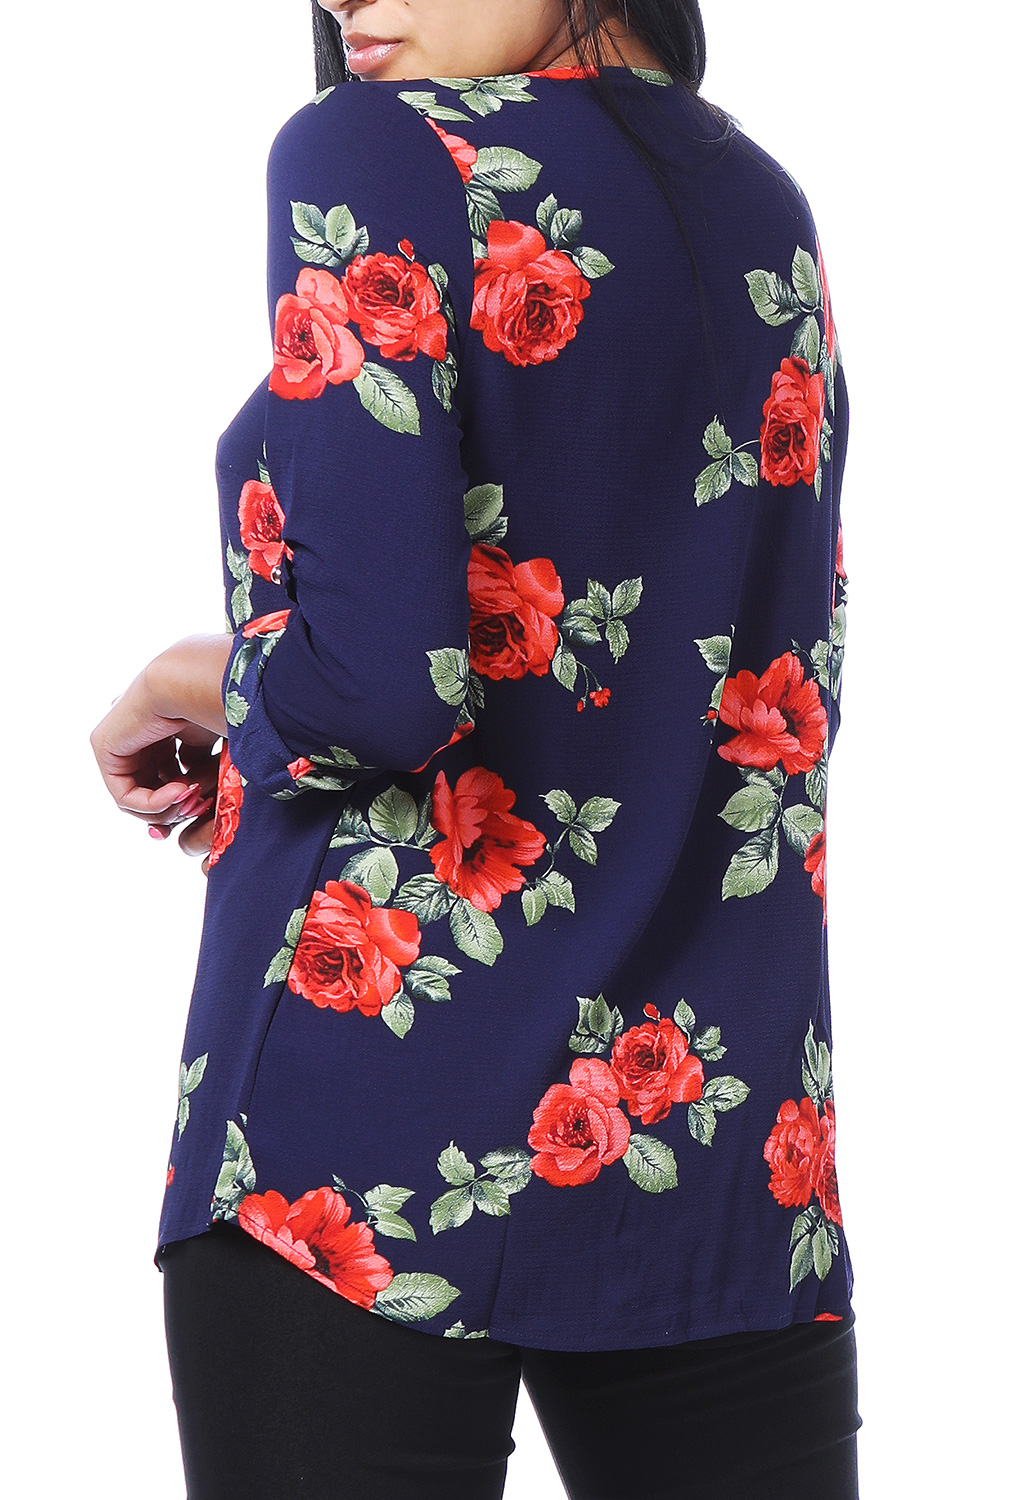 Floral Print Zip-Up Dressy Top